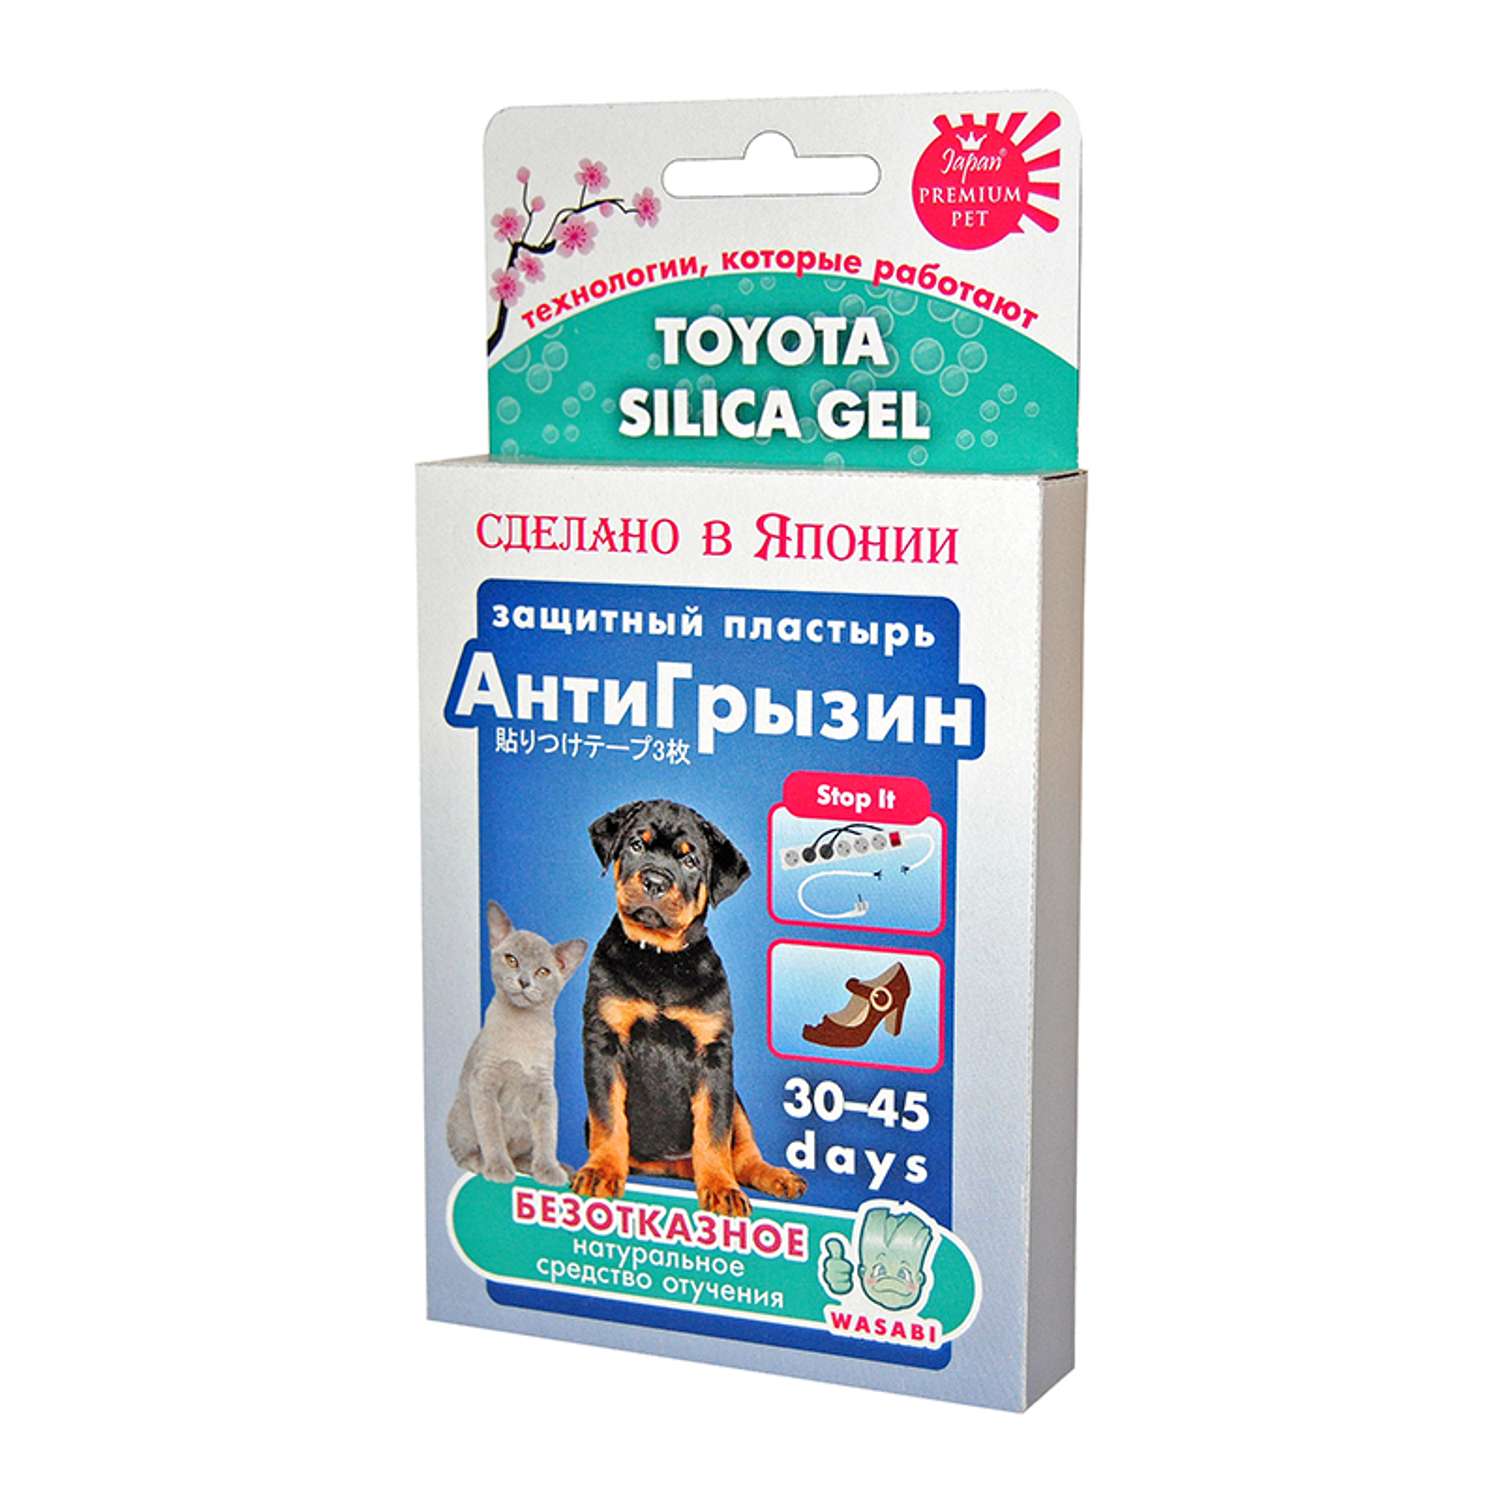 Пластырь для собак Toyota Silica Gel АнтиГрызин 3шт - фото 1